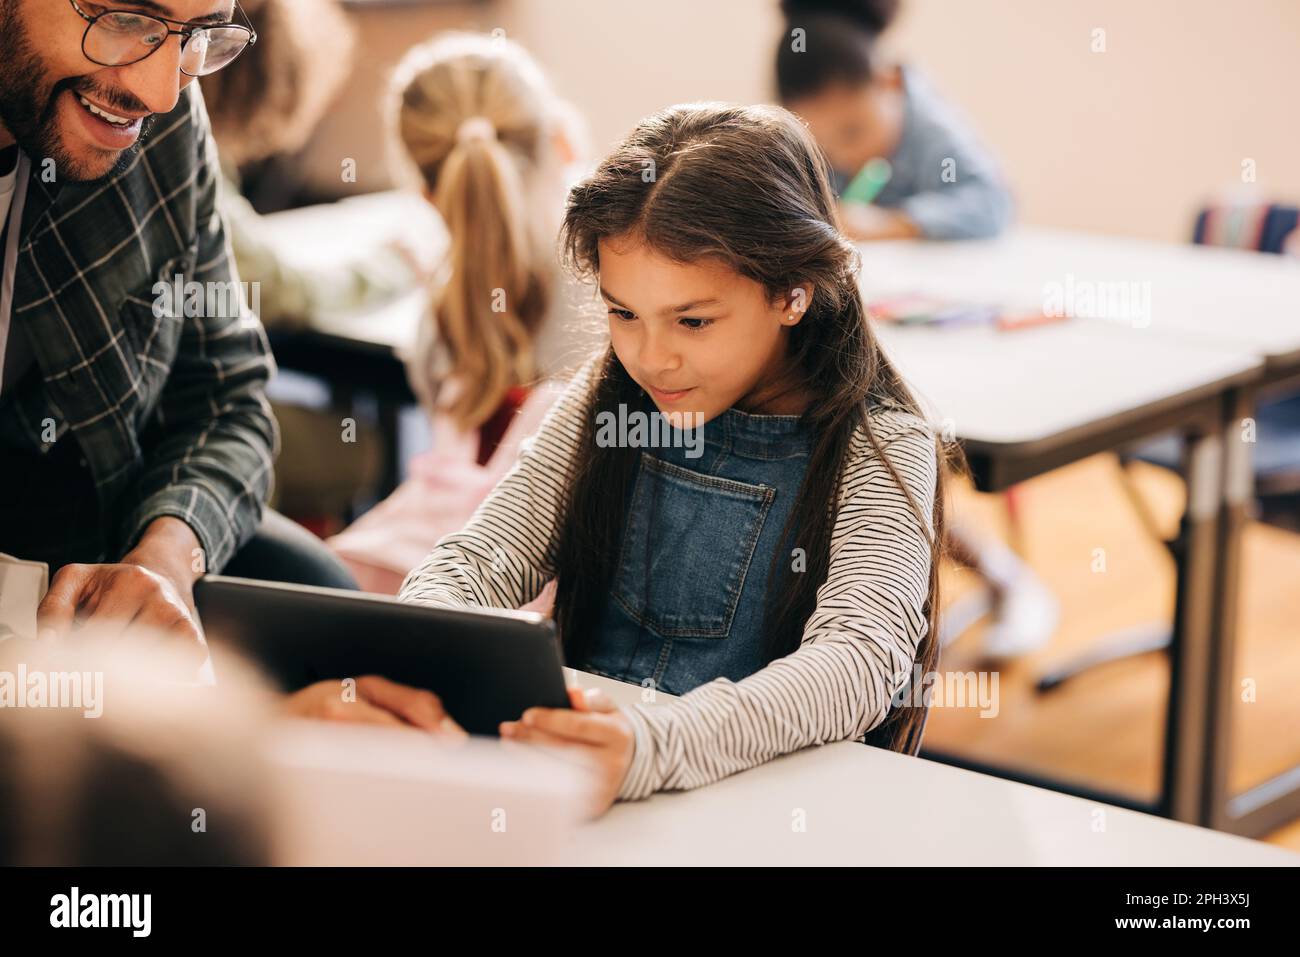 Un enseignant montre à un étudiant comment utiliser une tablette numérique dans une école primaire. Un tuteur masculin enseigne l'alphabétisation numérique et le codage aux jeunes enfants. Enfant e Banque D'Images